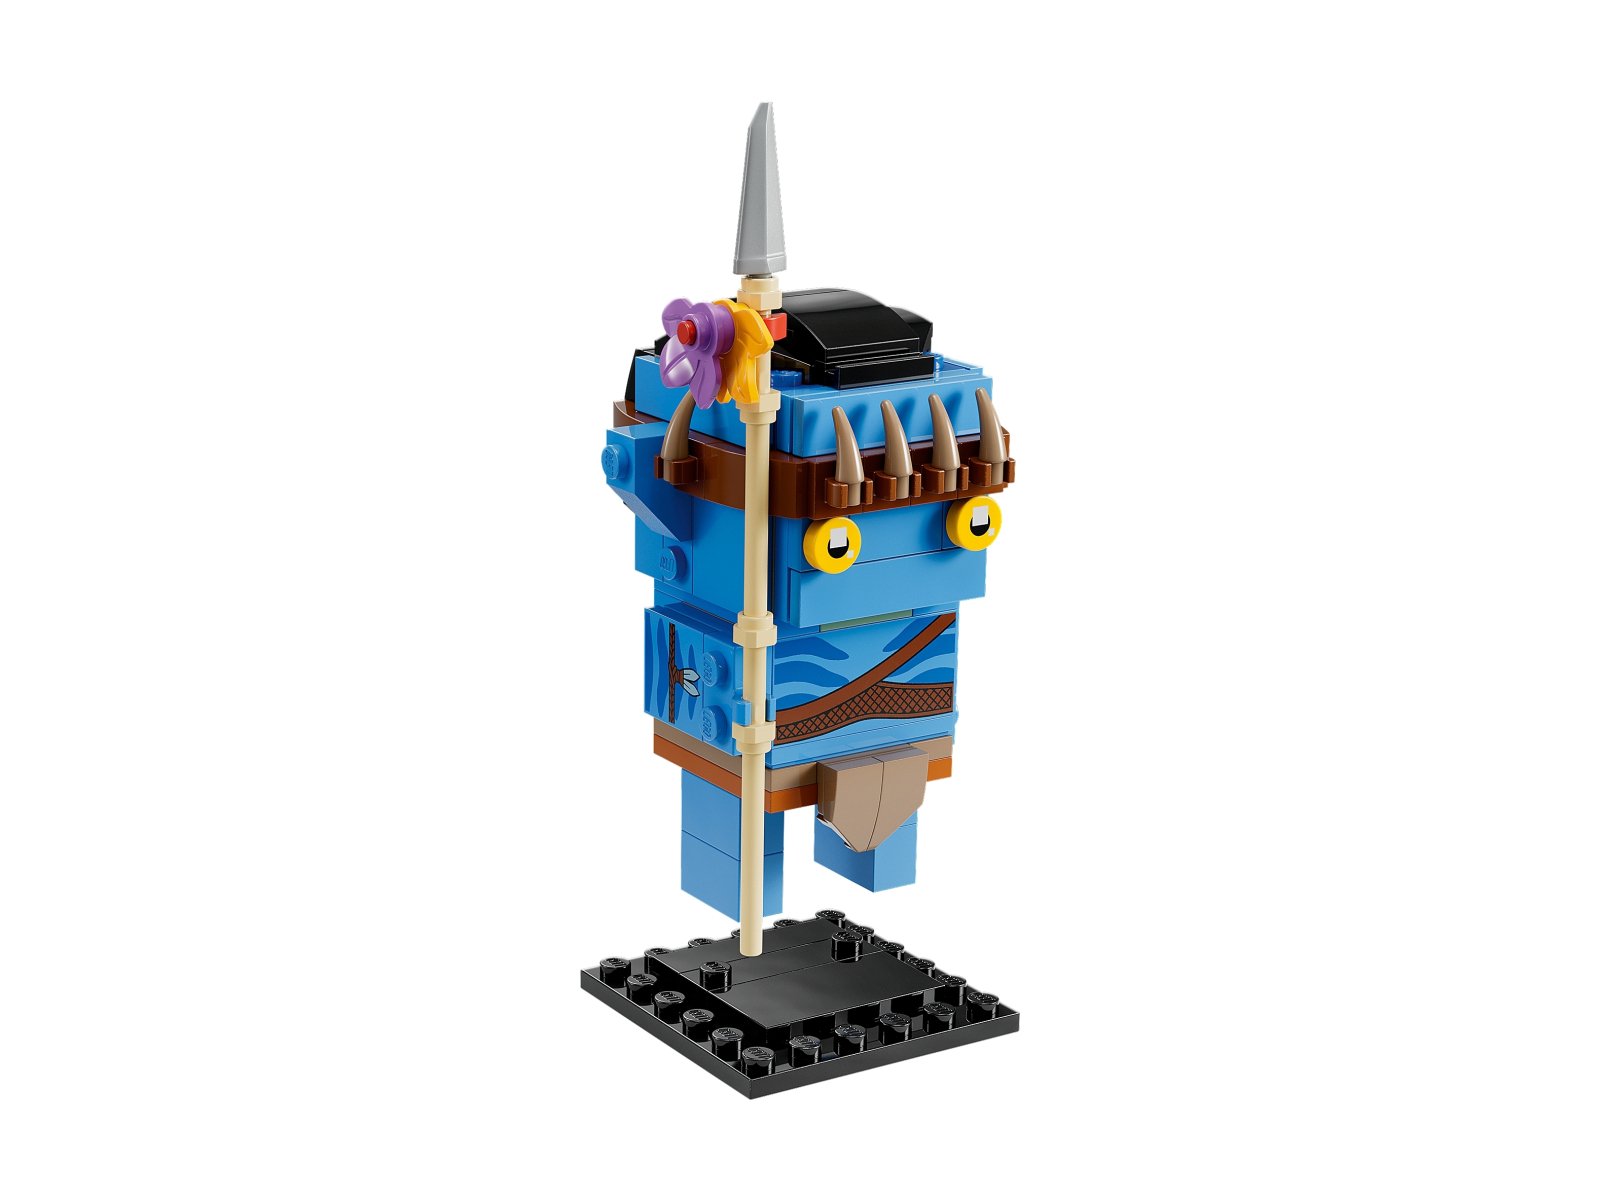 LEGO BrickHeadz Jake Sully i jego awatar 40554